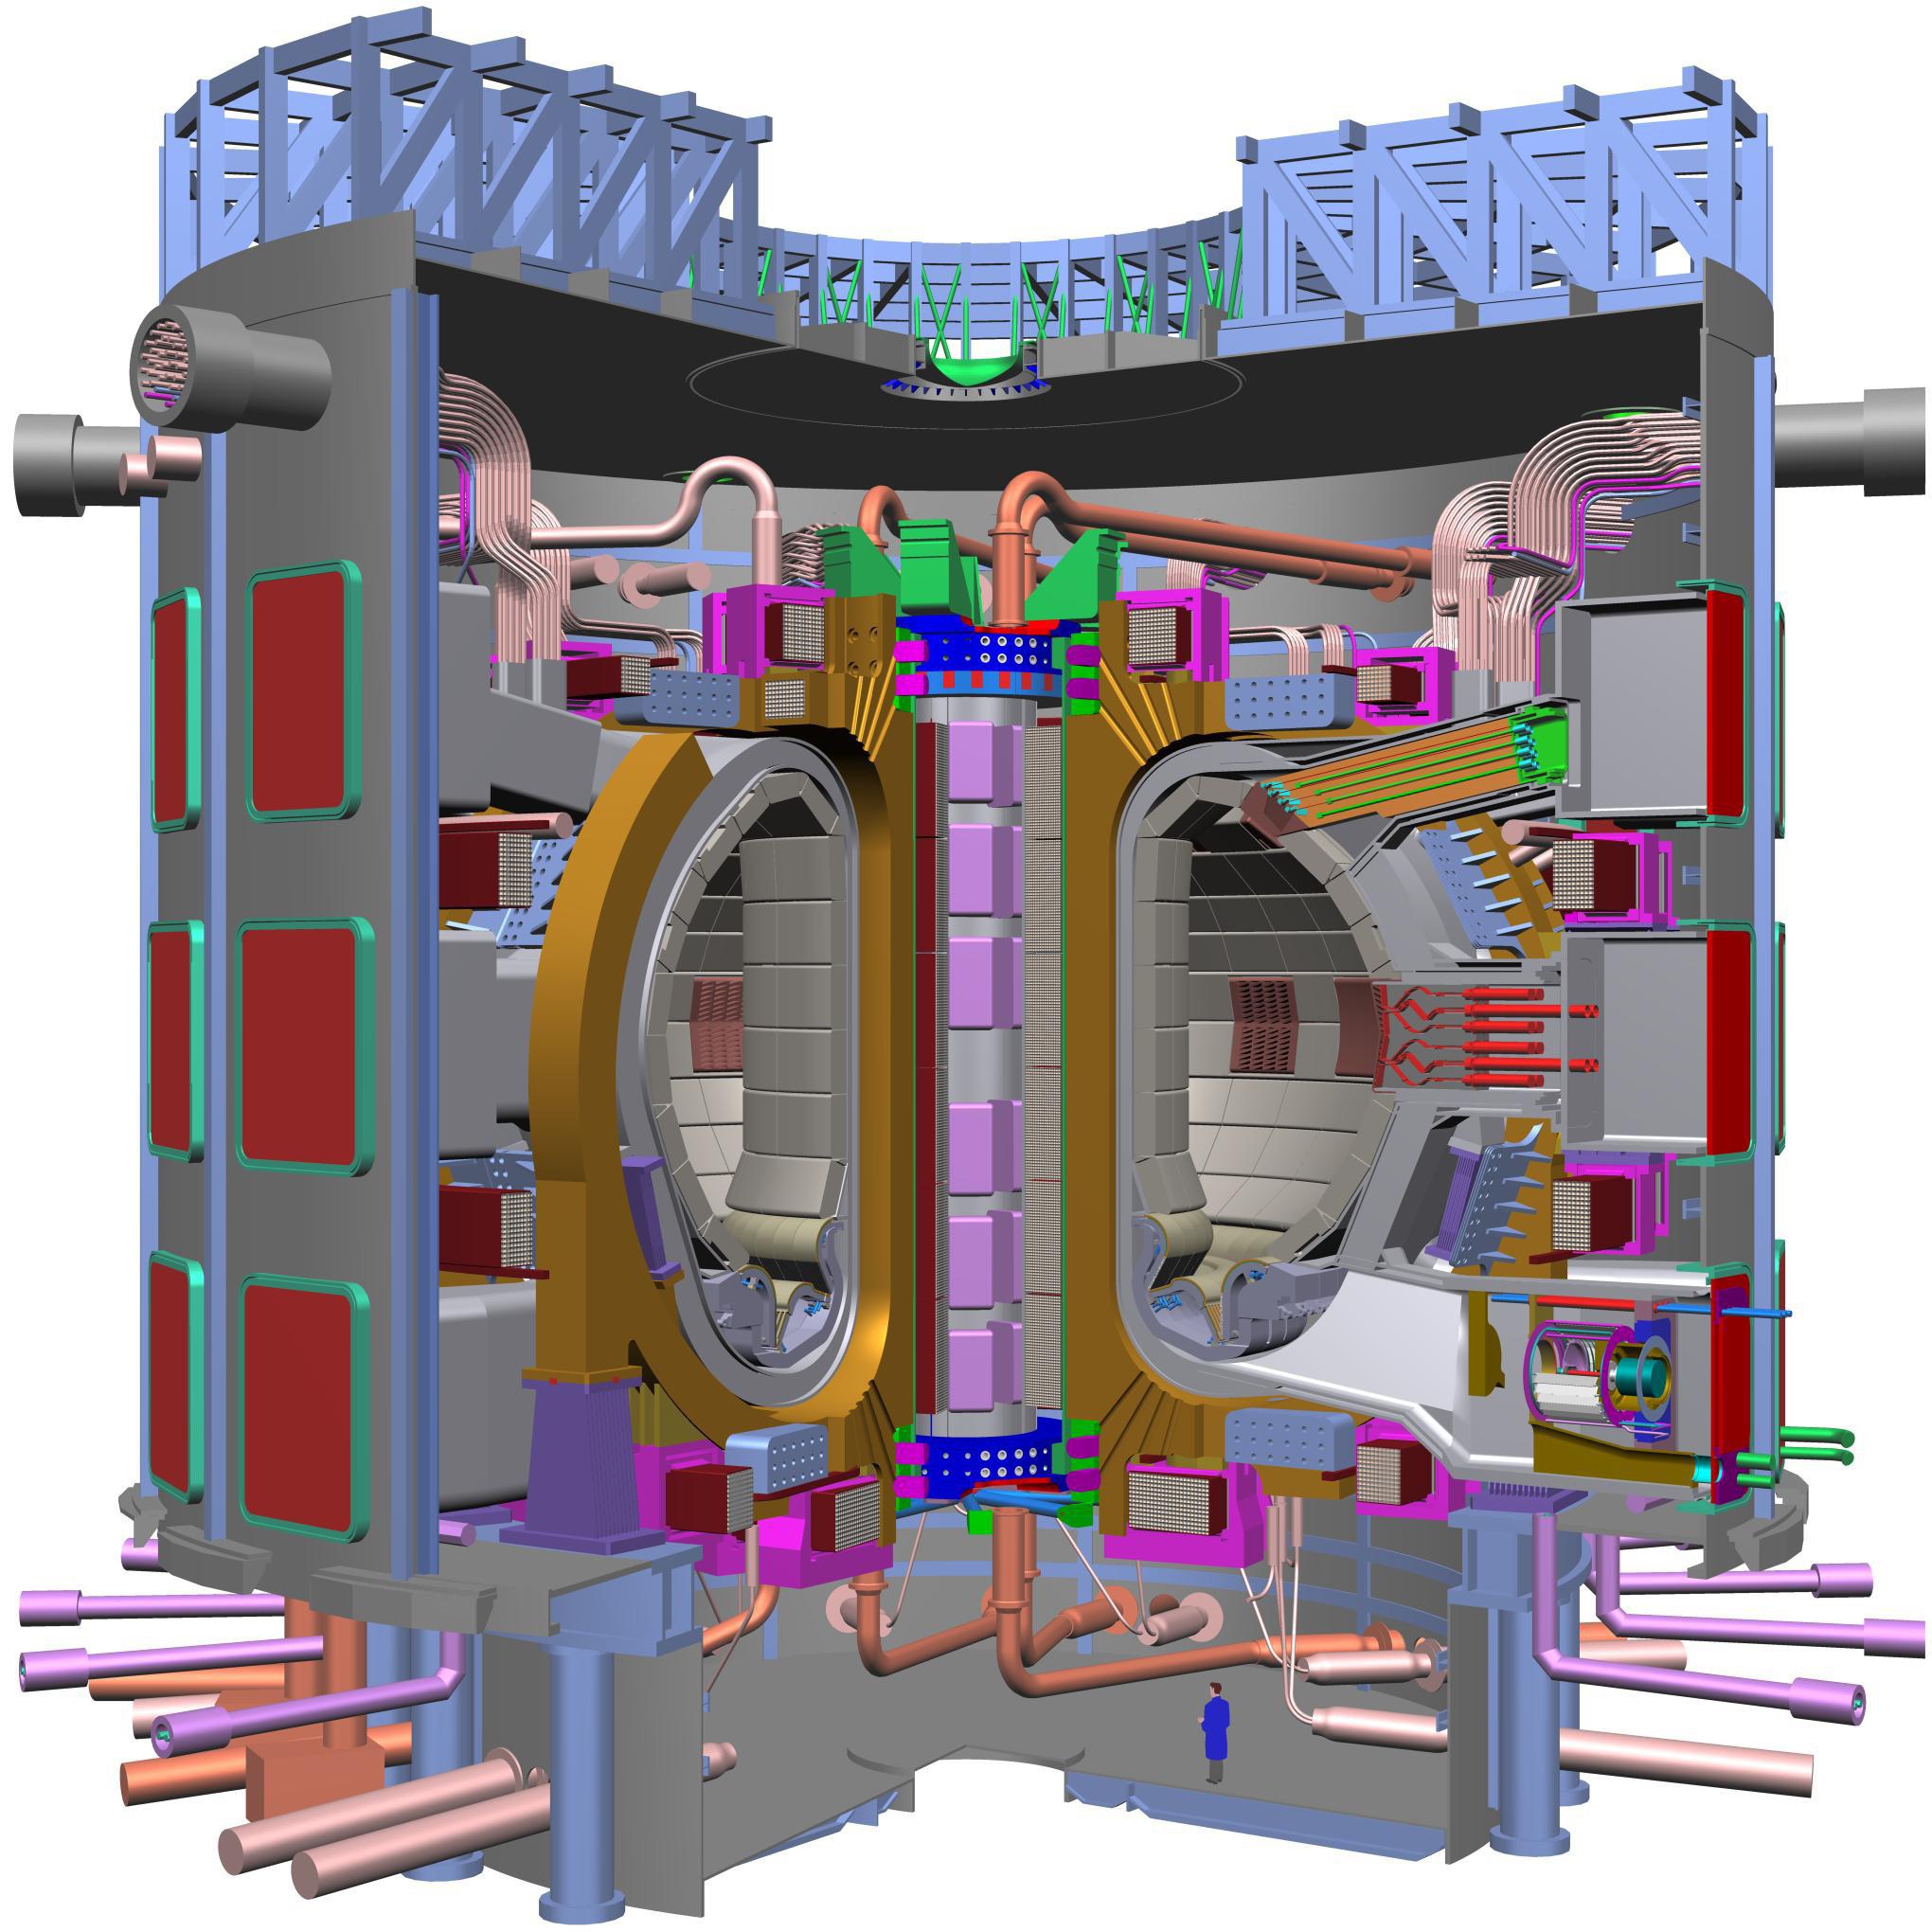 Художественная концепция международного термоядерного экспериментального реактора (ИТЭР)